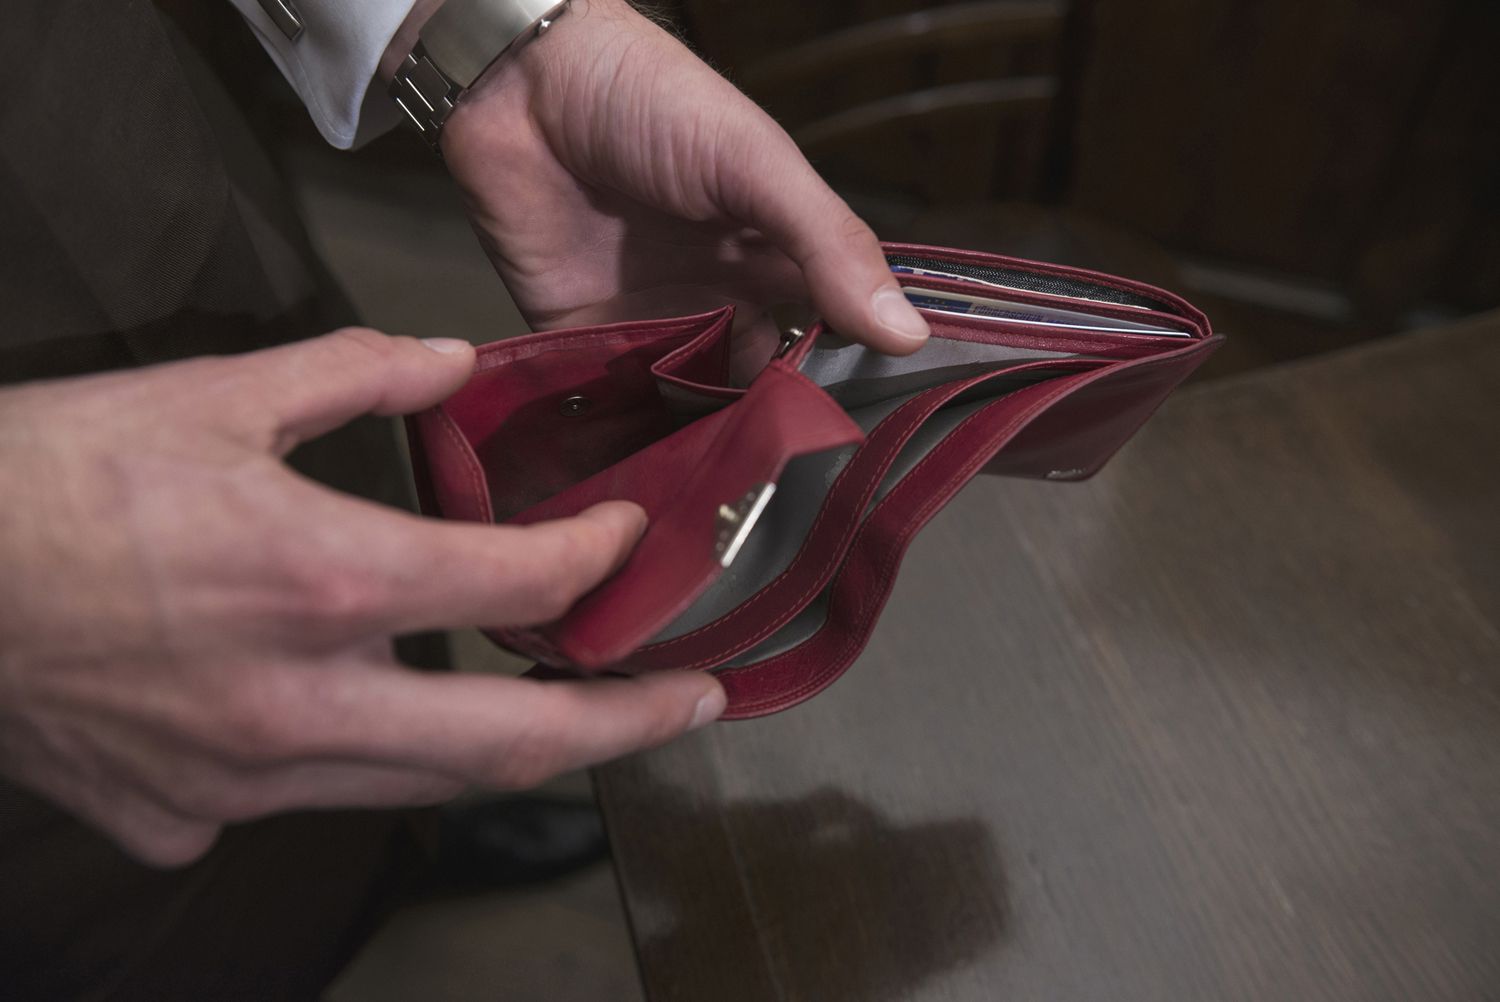 Mužské ruce prázdnou peněženku